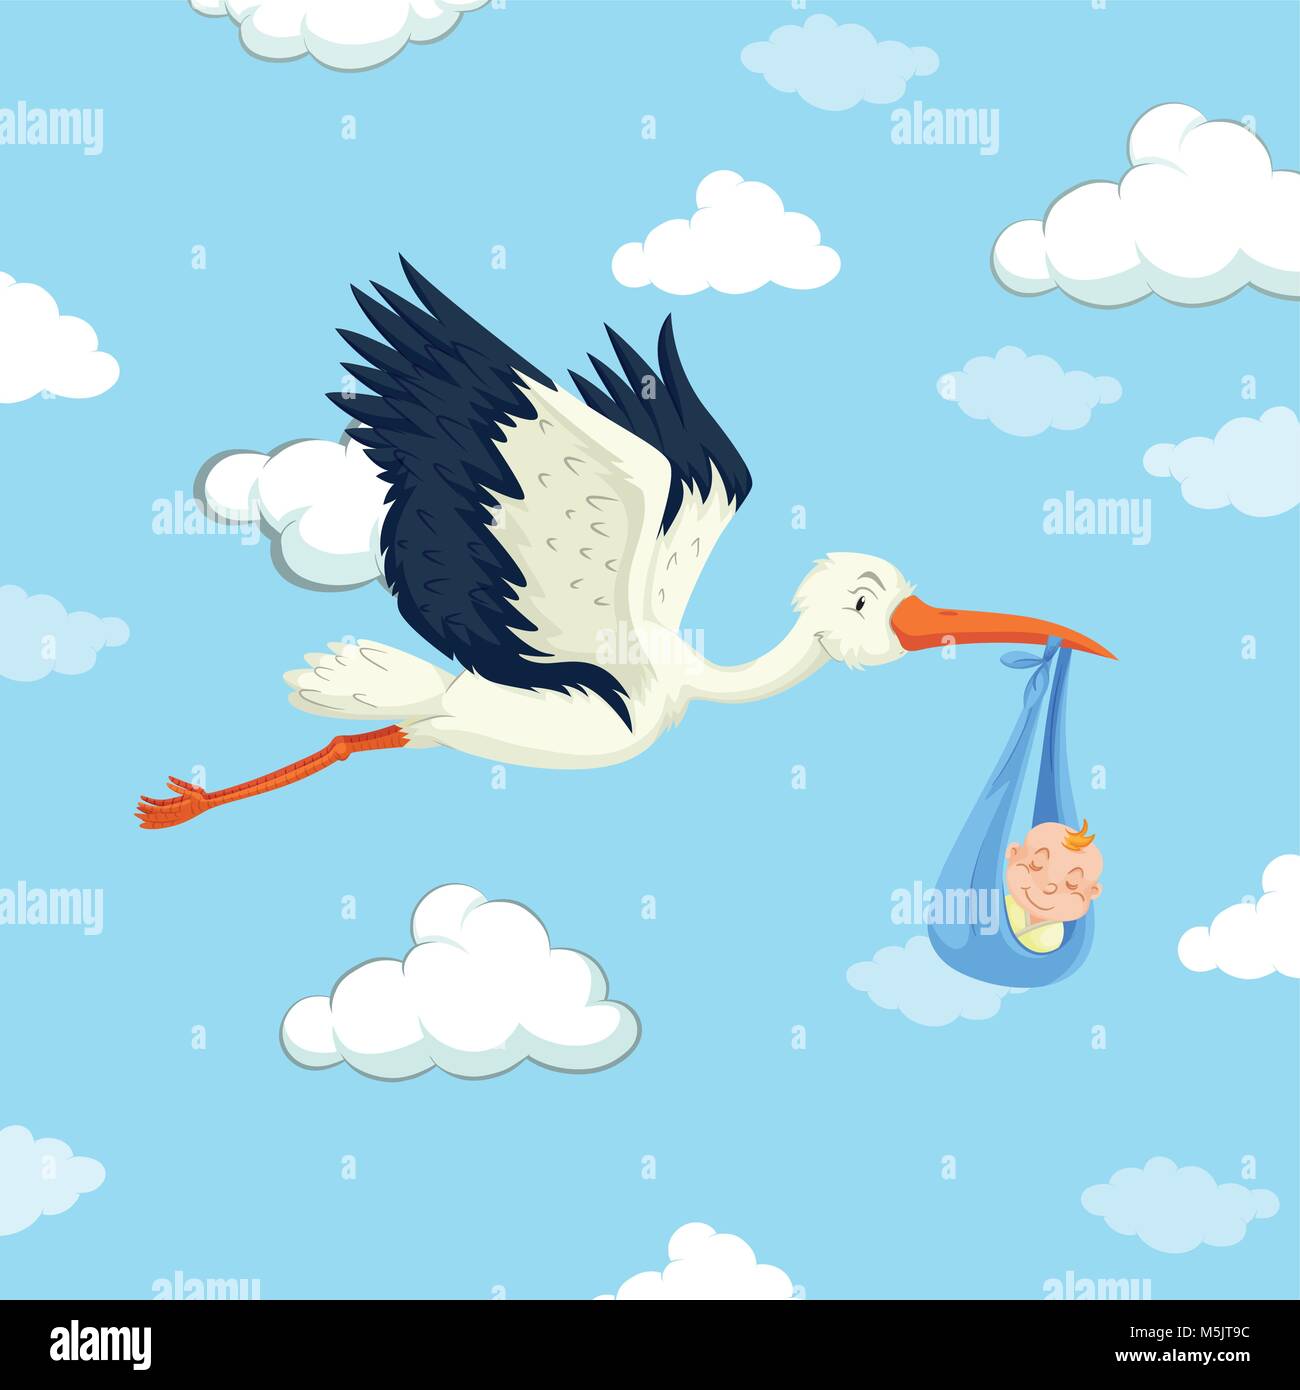 Stork delivering baby boy illustration Stock Vector